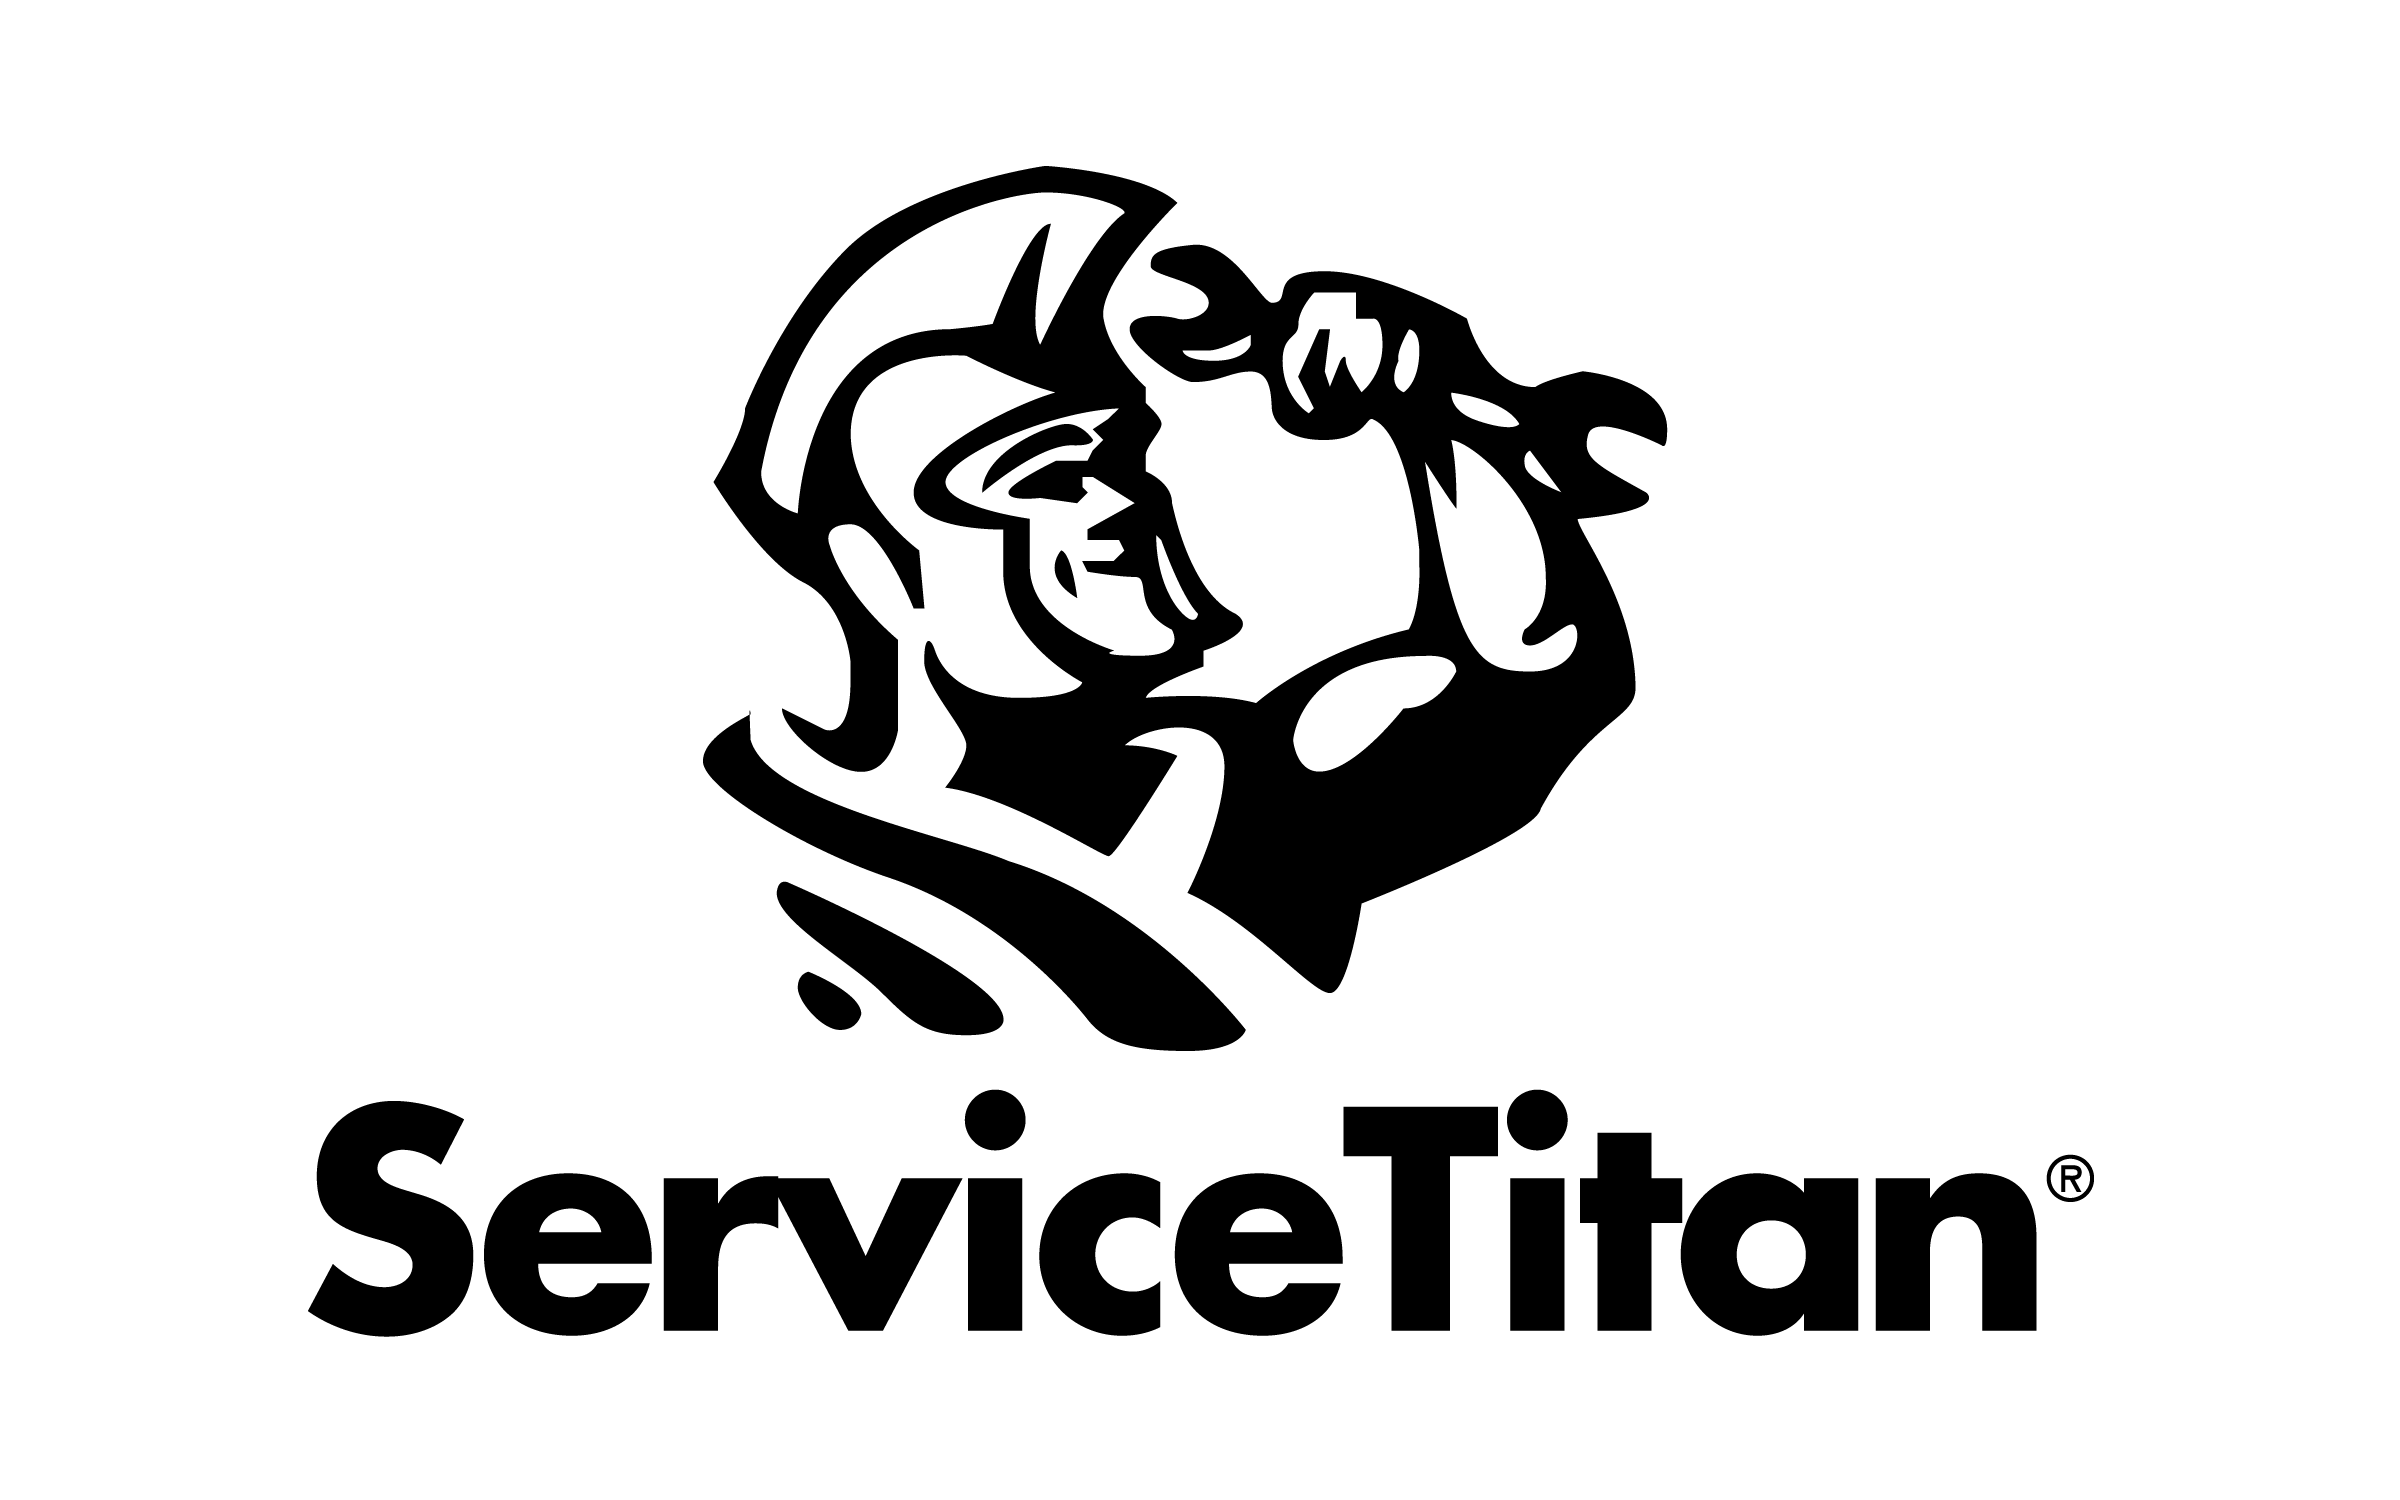 ServiceTitan